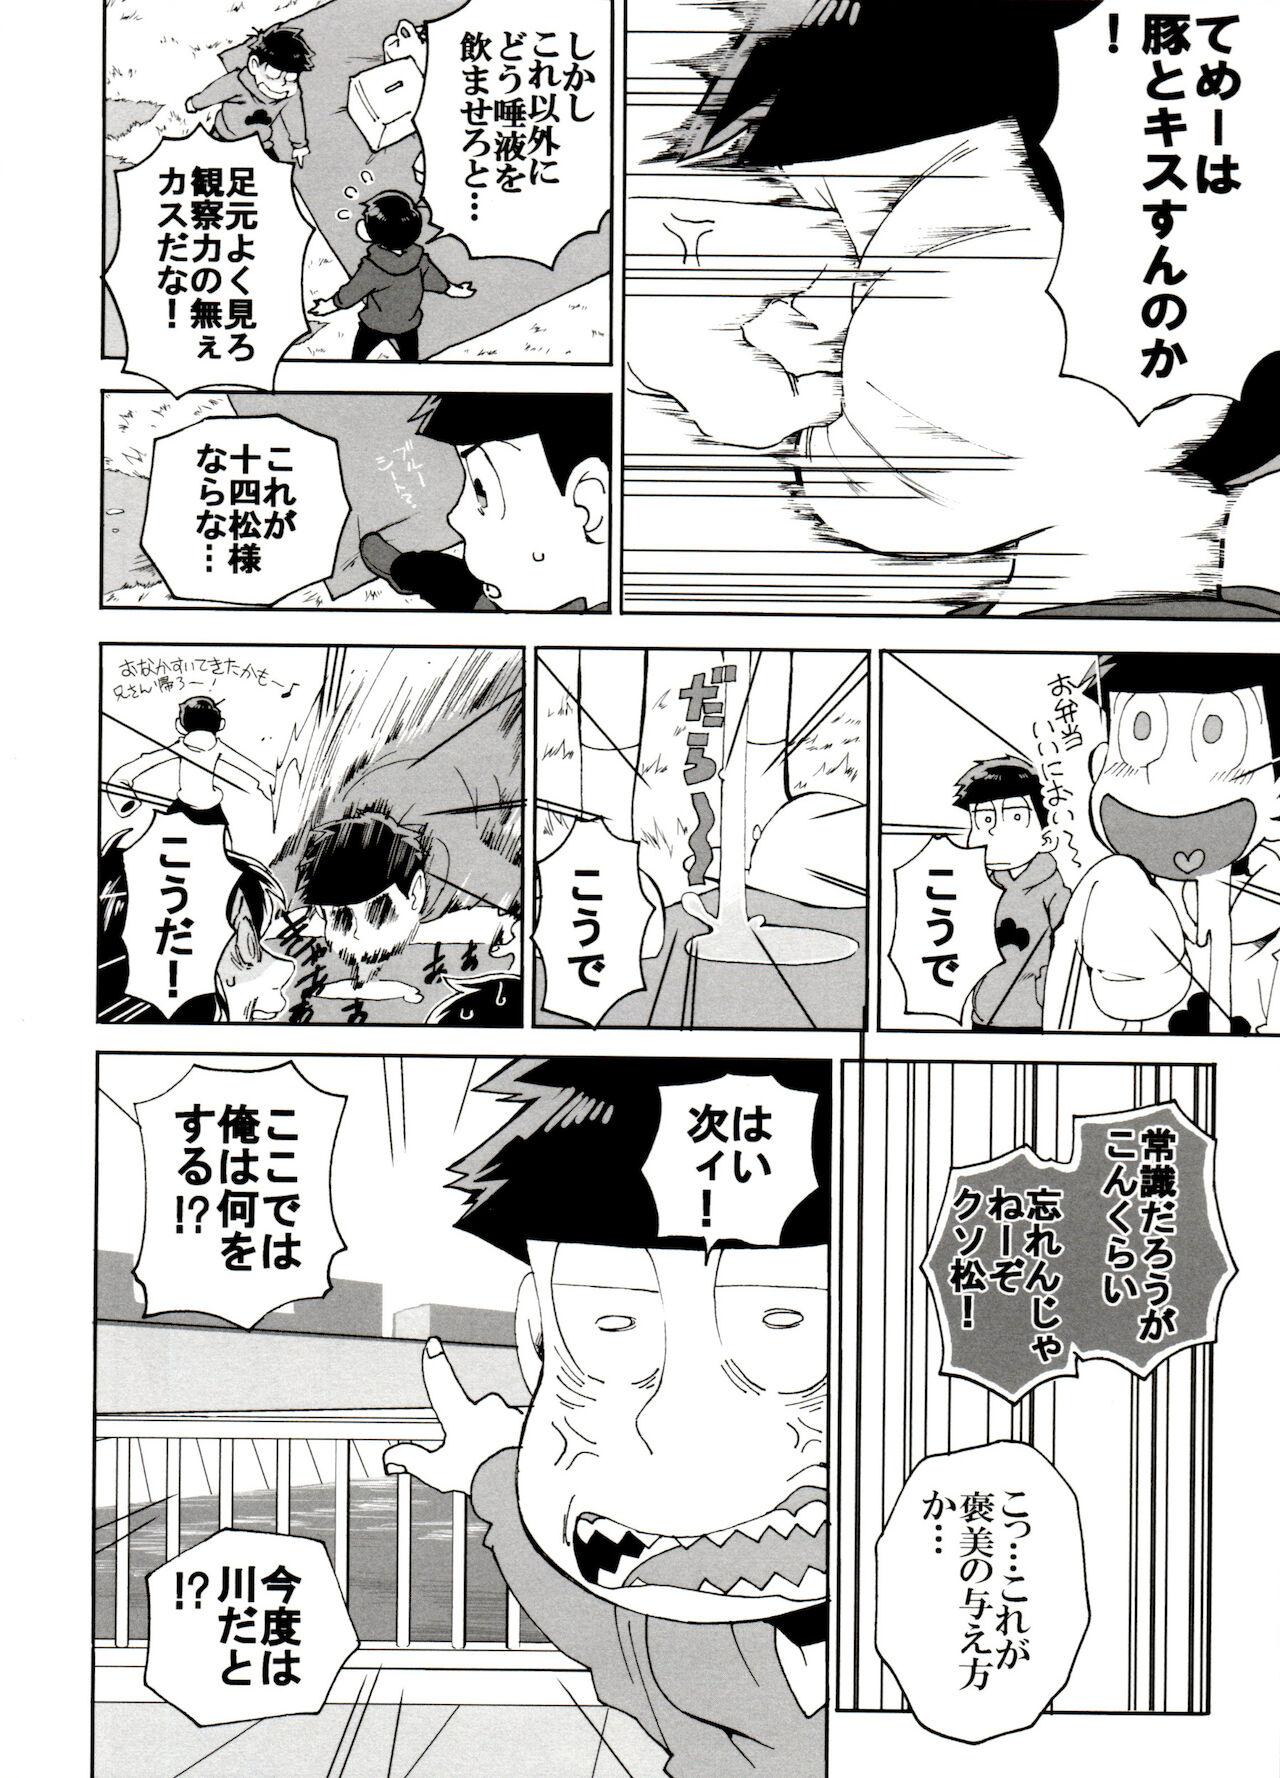 Nudist SM Matsu 2 - Osomatsu-san Teenporn - Page 10